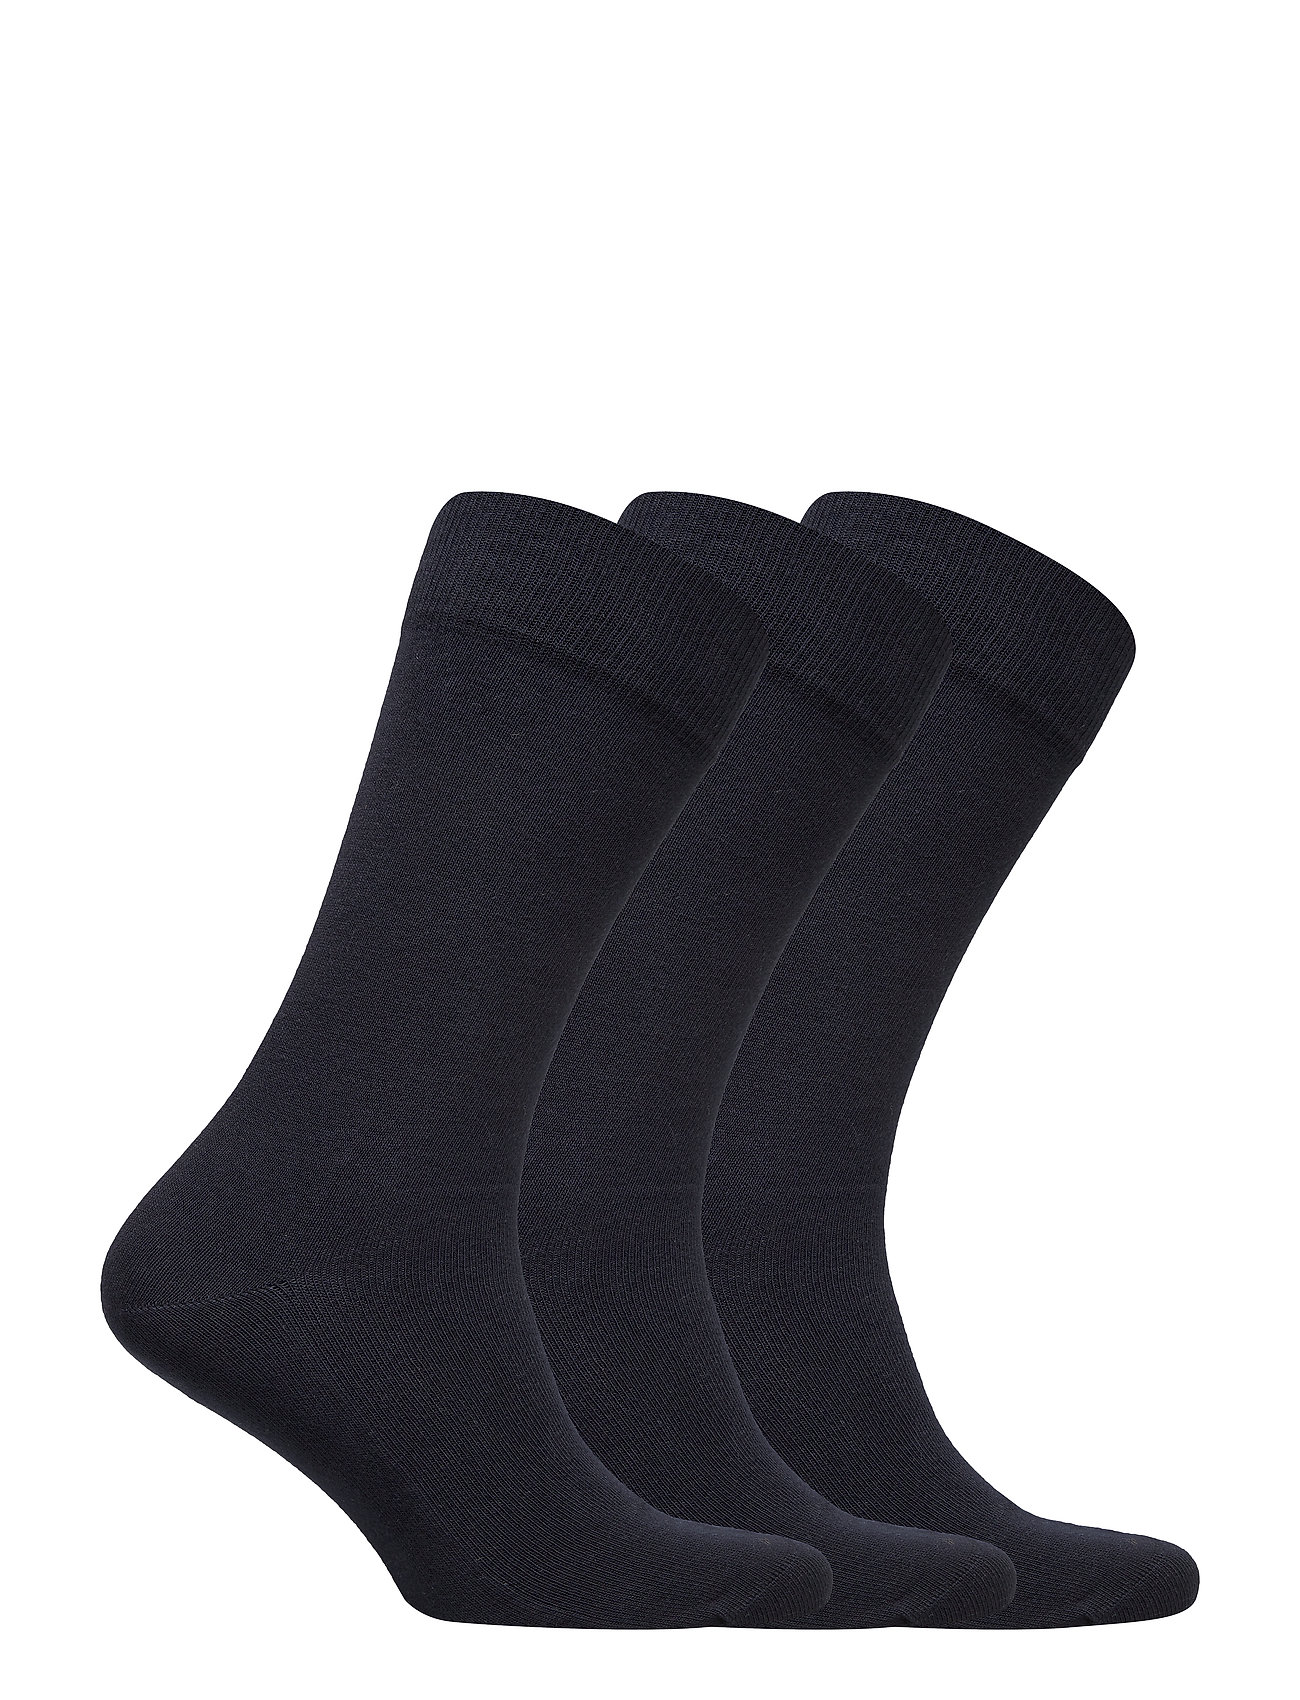 Amanda Christensen - True Ankle Sock - lowest prices - dark navy - 1